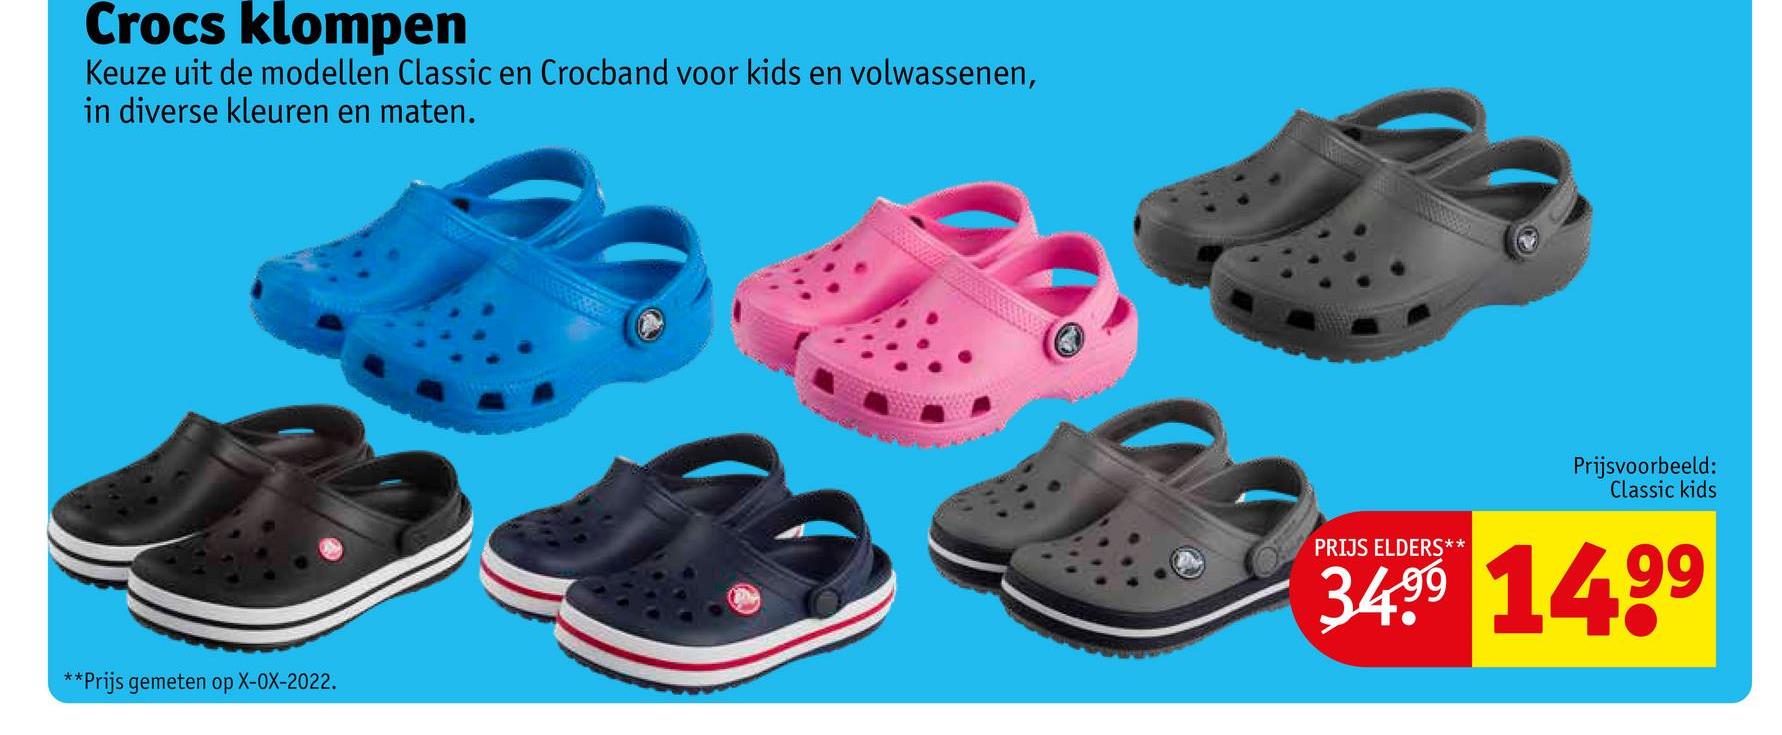 Crocs klompen
Keuze uit de modellen Classic en Crocband voor kids en volwassenen,
in diverse kleuren en maten.
**Prijs gemeten op X-OX-2022.
Prijsvoorbeeld:
Classic kids
PRIJS ELDERS**
34.⁹9 14.⁹⁹